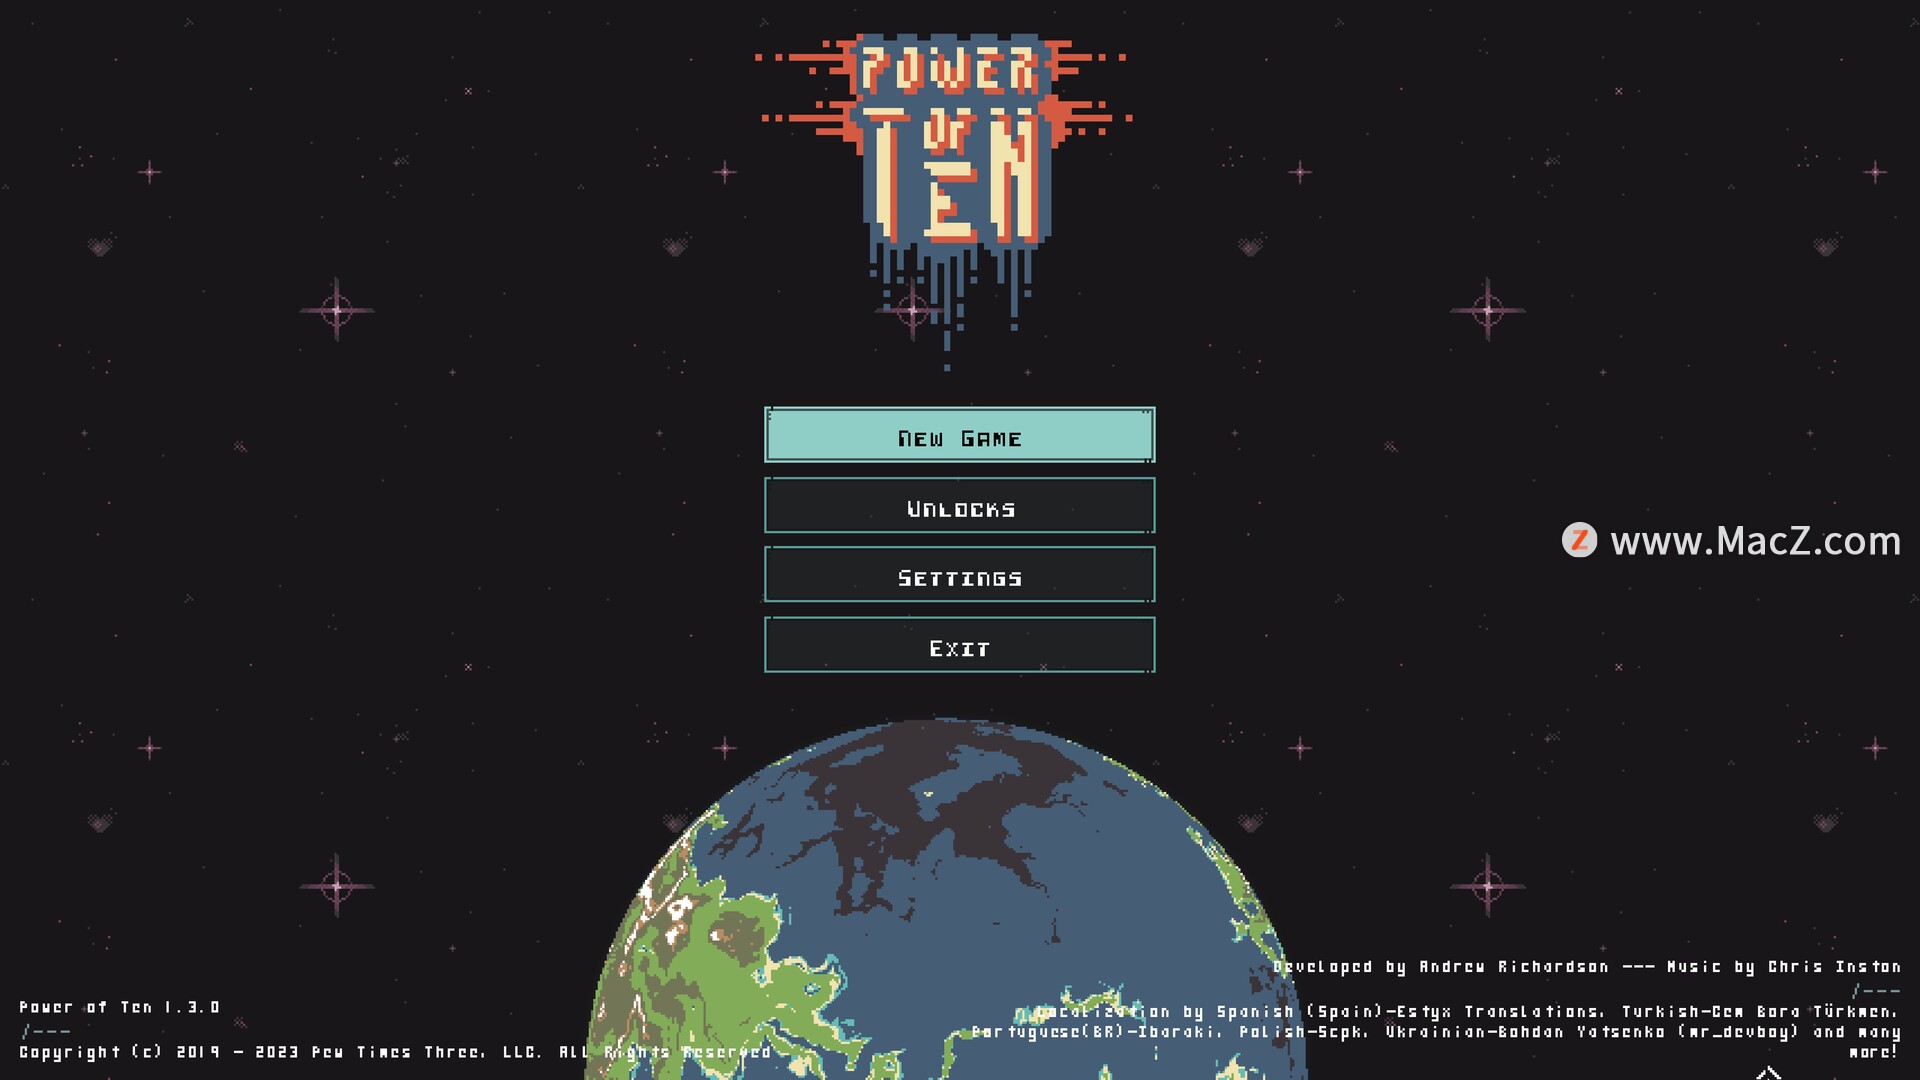 十的力量Power Of Ten for mac(像素风格射击游戏) 135.17 MB 英文软件